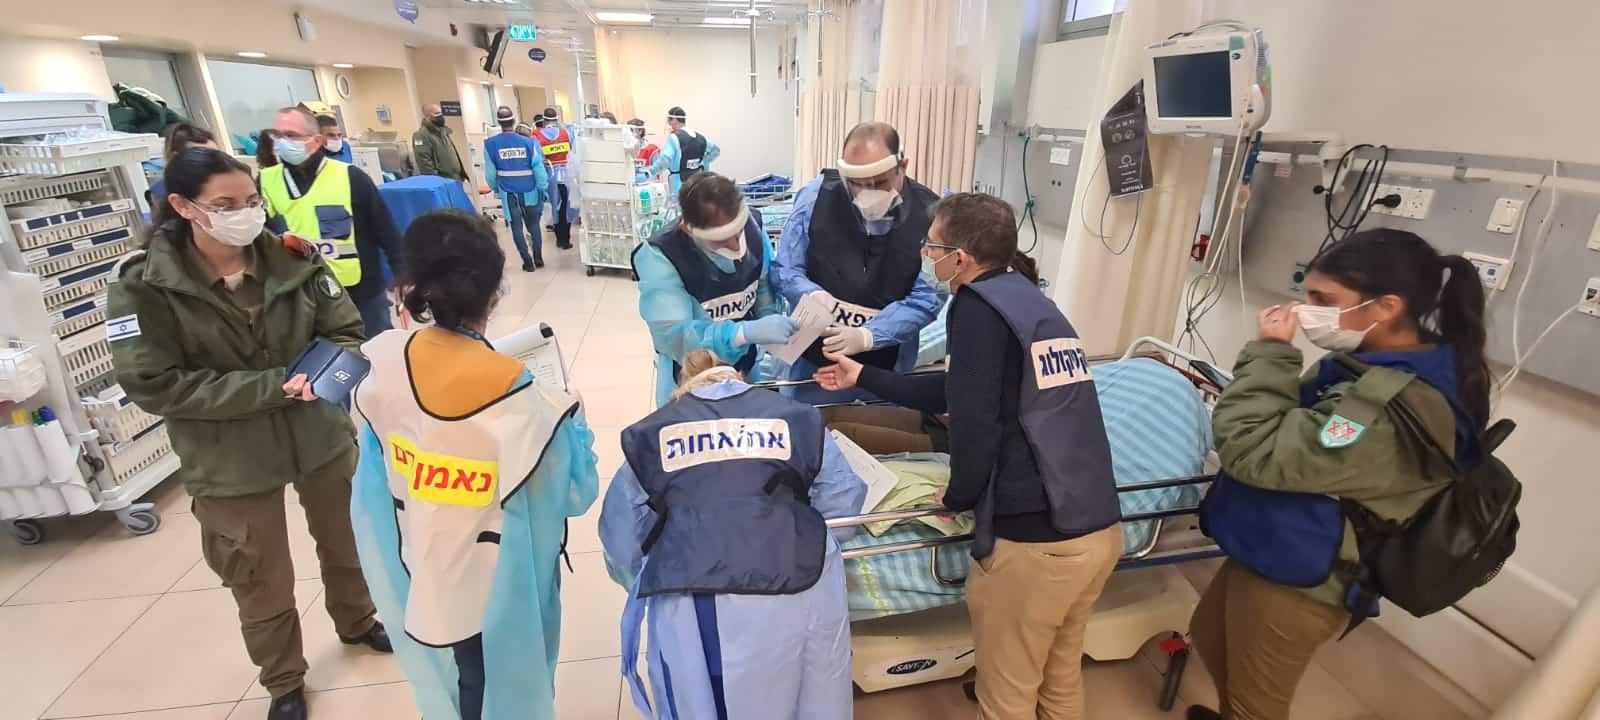 תרגיל אירוע רב נפגעים בבית חולים כרמל, קרדיט צילום: אלי דדון